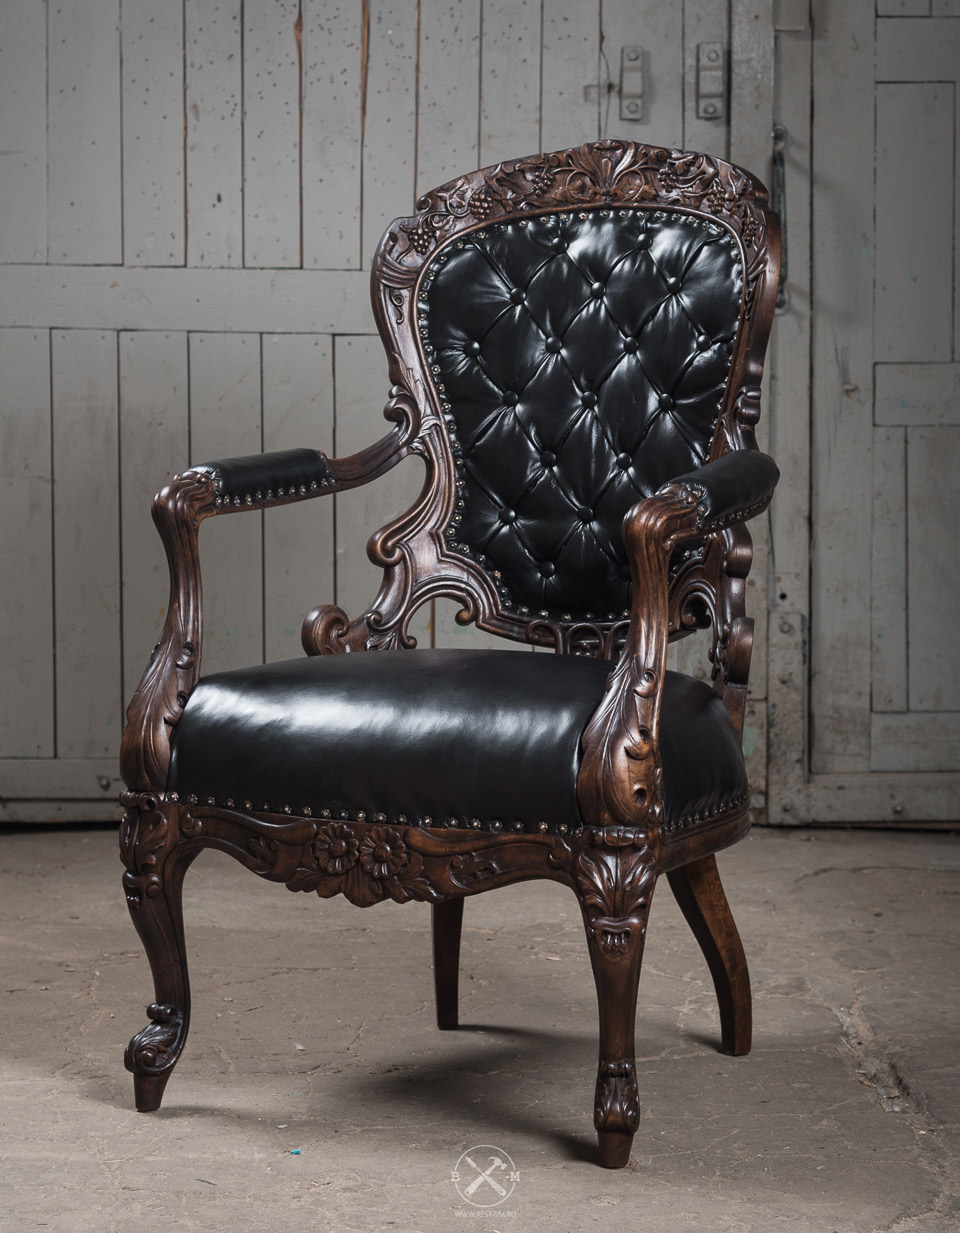 реставрация кресла 19 века в мастерской